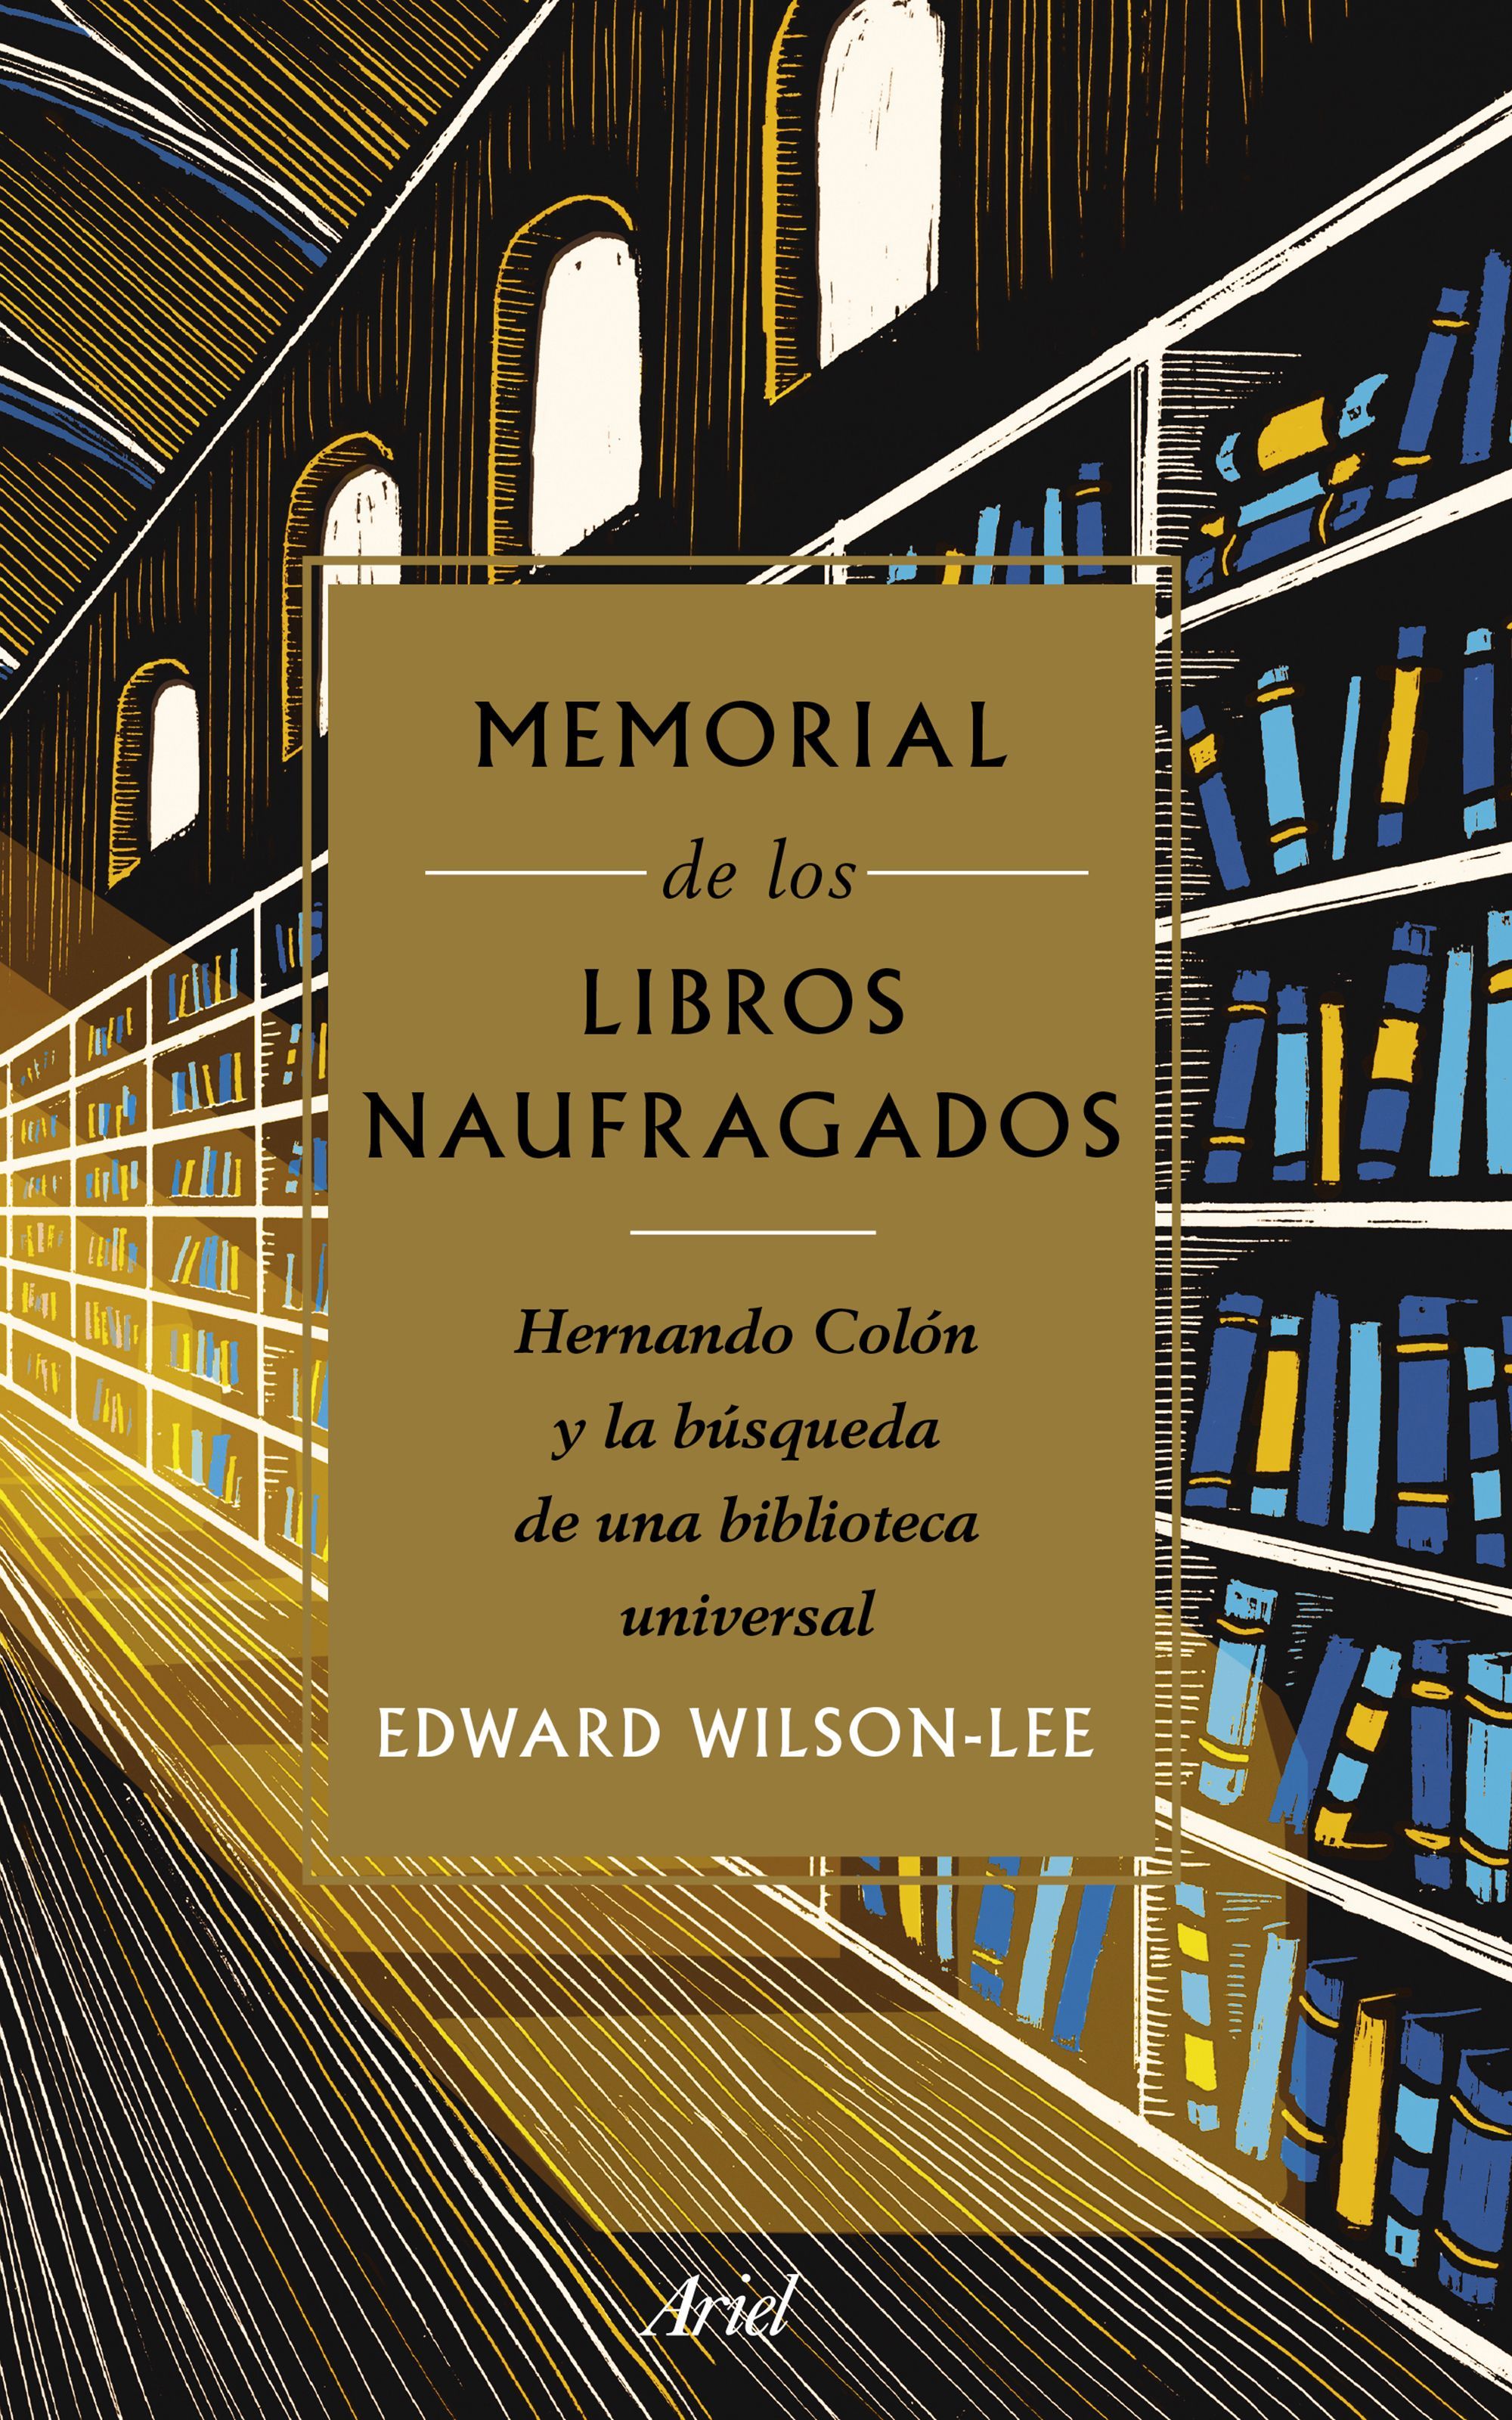 MEMORIAL DE LOS LIBROS NAUFRAGADOS. HERNANDO COLÓN Y LA BÚSQUEDA DE UNA BIBLIOTECA UNIVERSAL